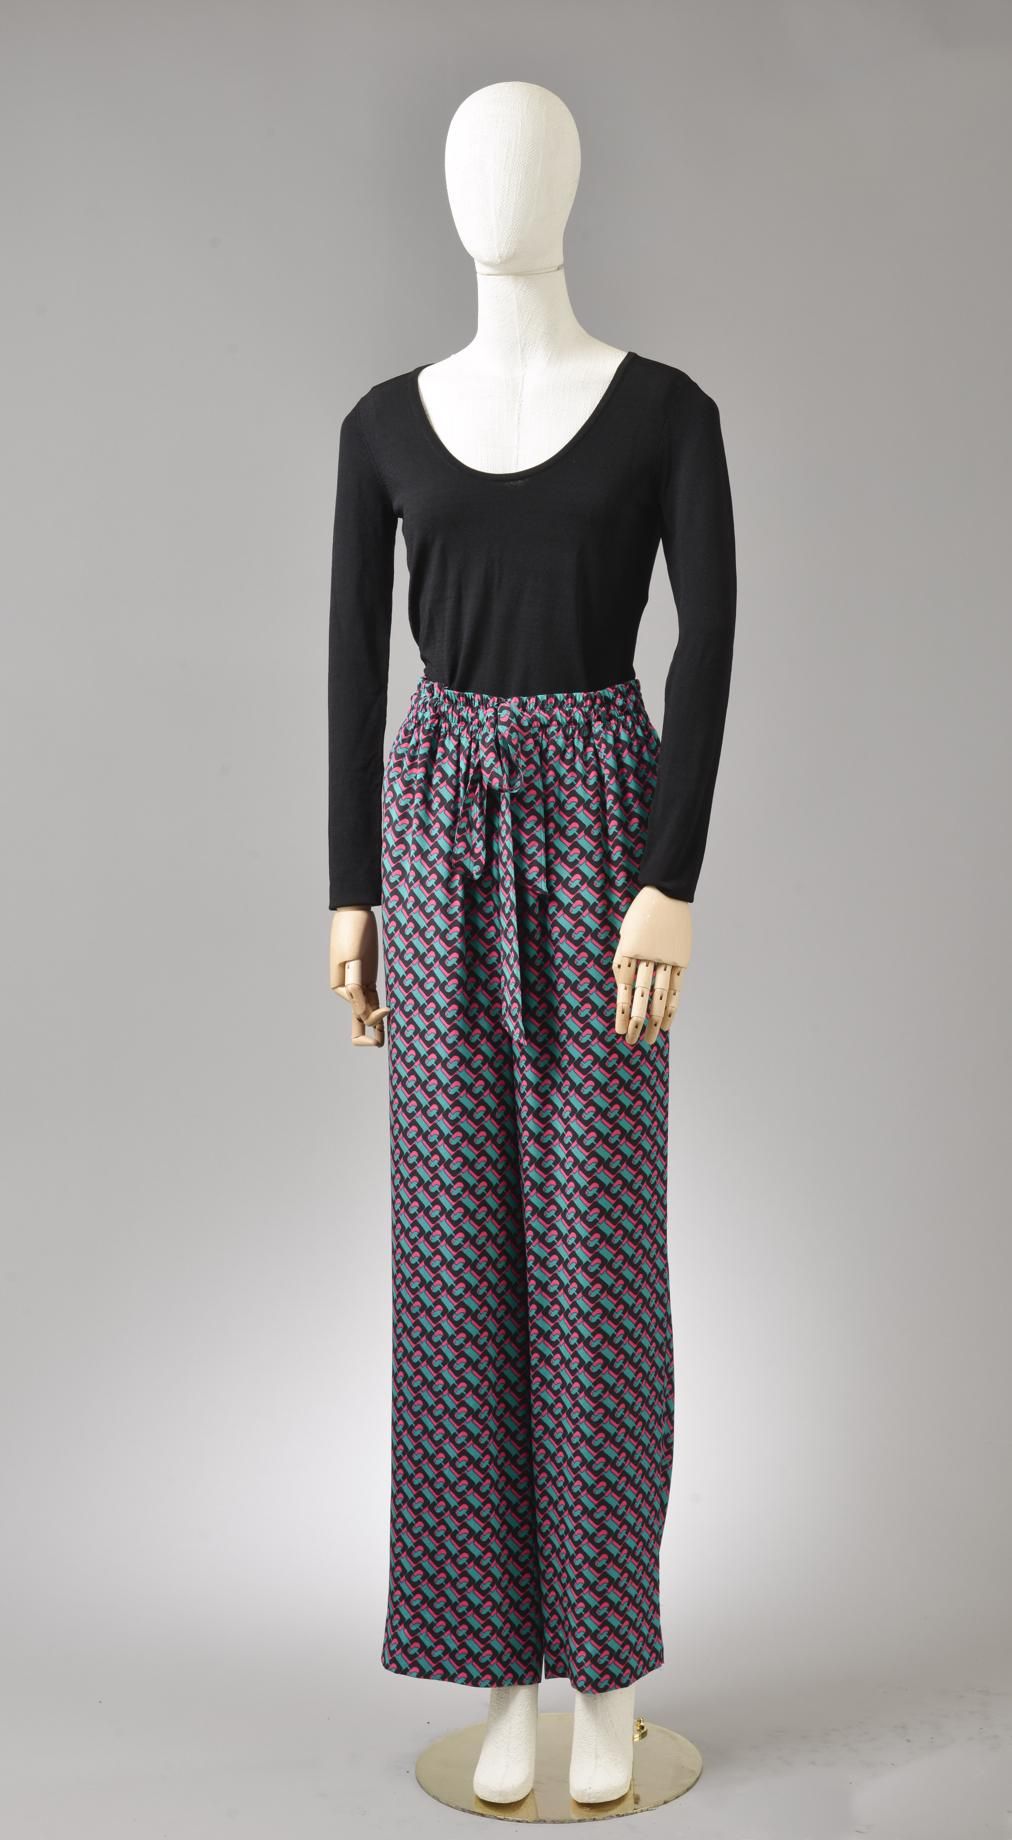 Null *尺寸XXS DVF - Diane Von Fürstenberg

套装包括。

-弹性丝质绉绸和三醋酸纤维长裤，型号为 "DVF Denise"&hellip;